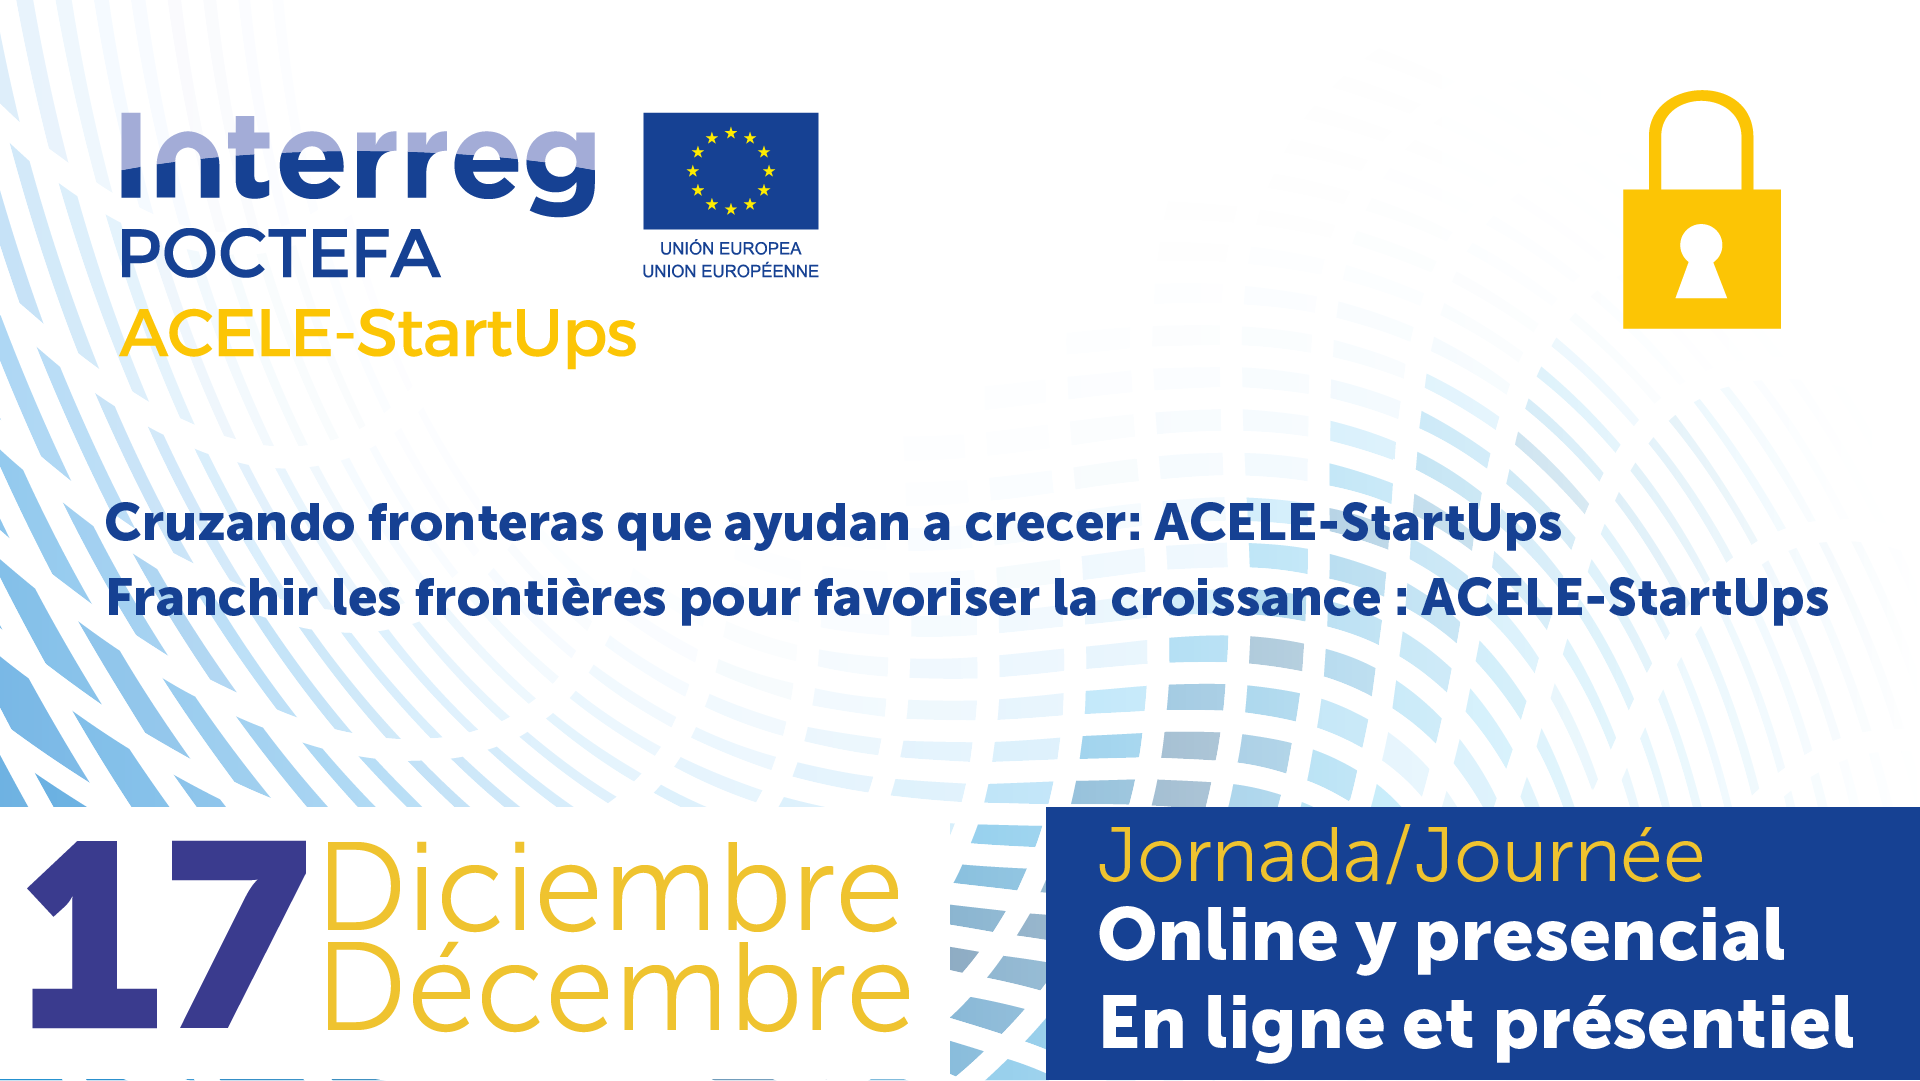 Jornada online y presencial en Zaragoza “Cruzando fronteras que ayudan a crecer: ACELE-StartUps”